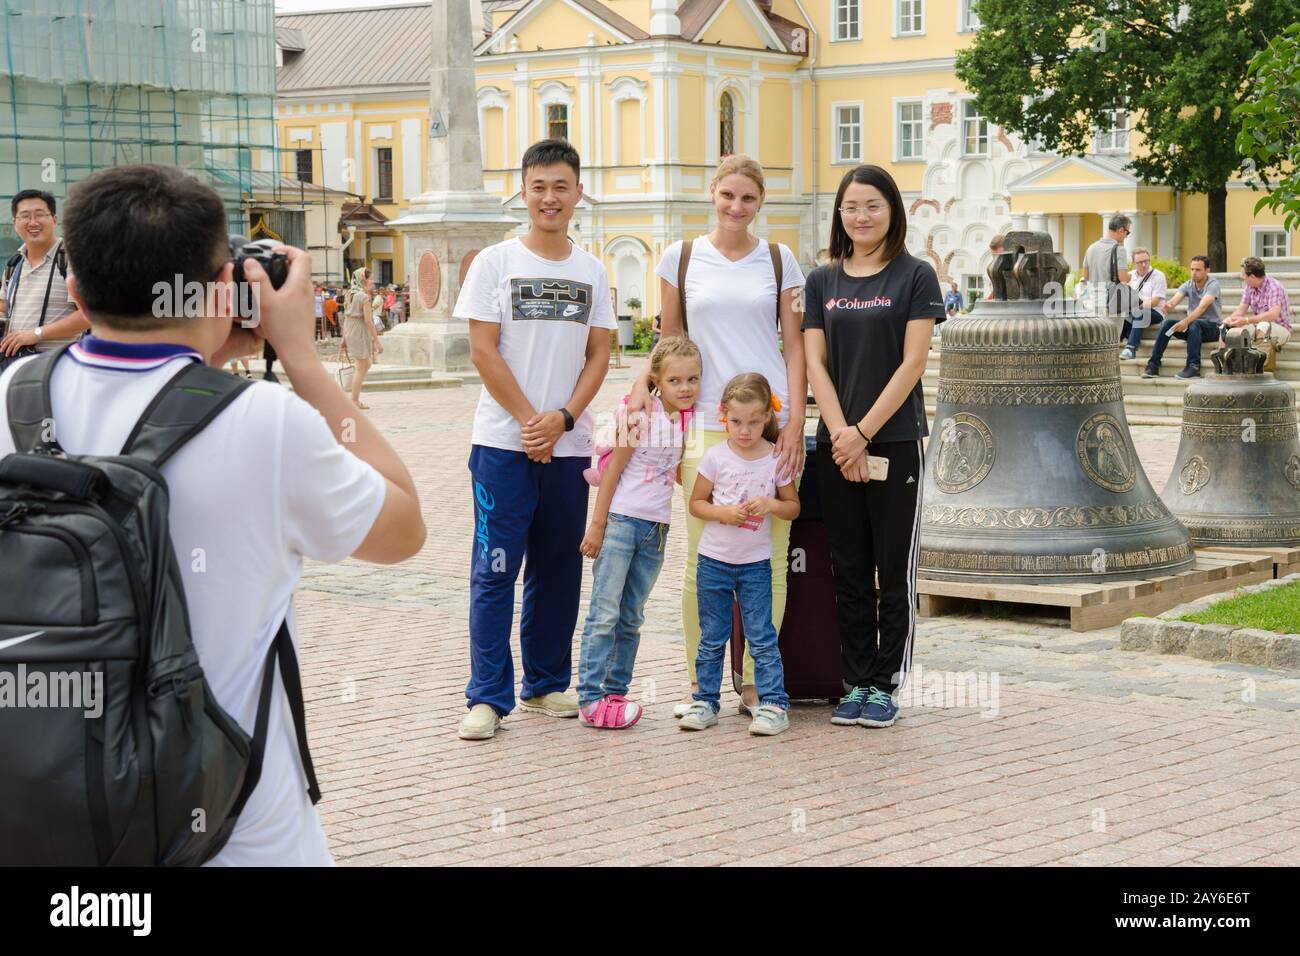 Sergiev Posad - Agosto 10, 2015: i turisti stranieri sono fotografati con visitatori russi sullo sfondo delle campane in H Foto Stock